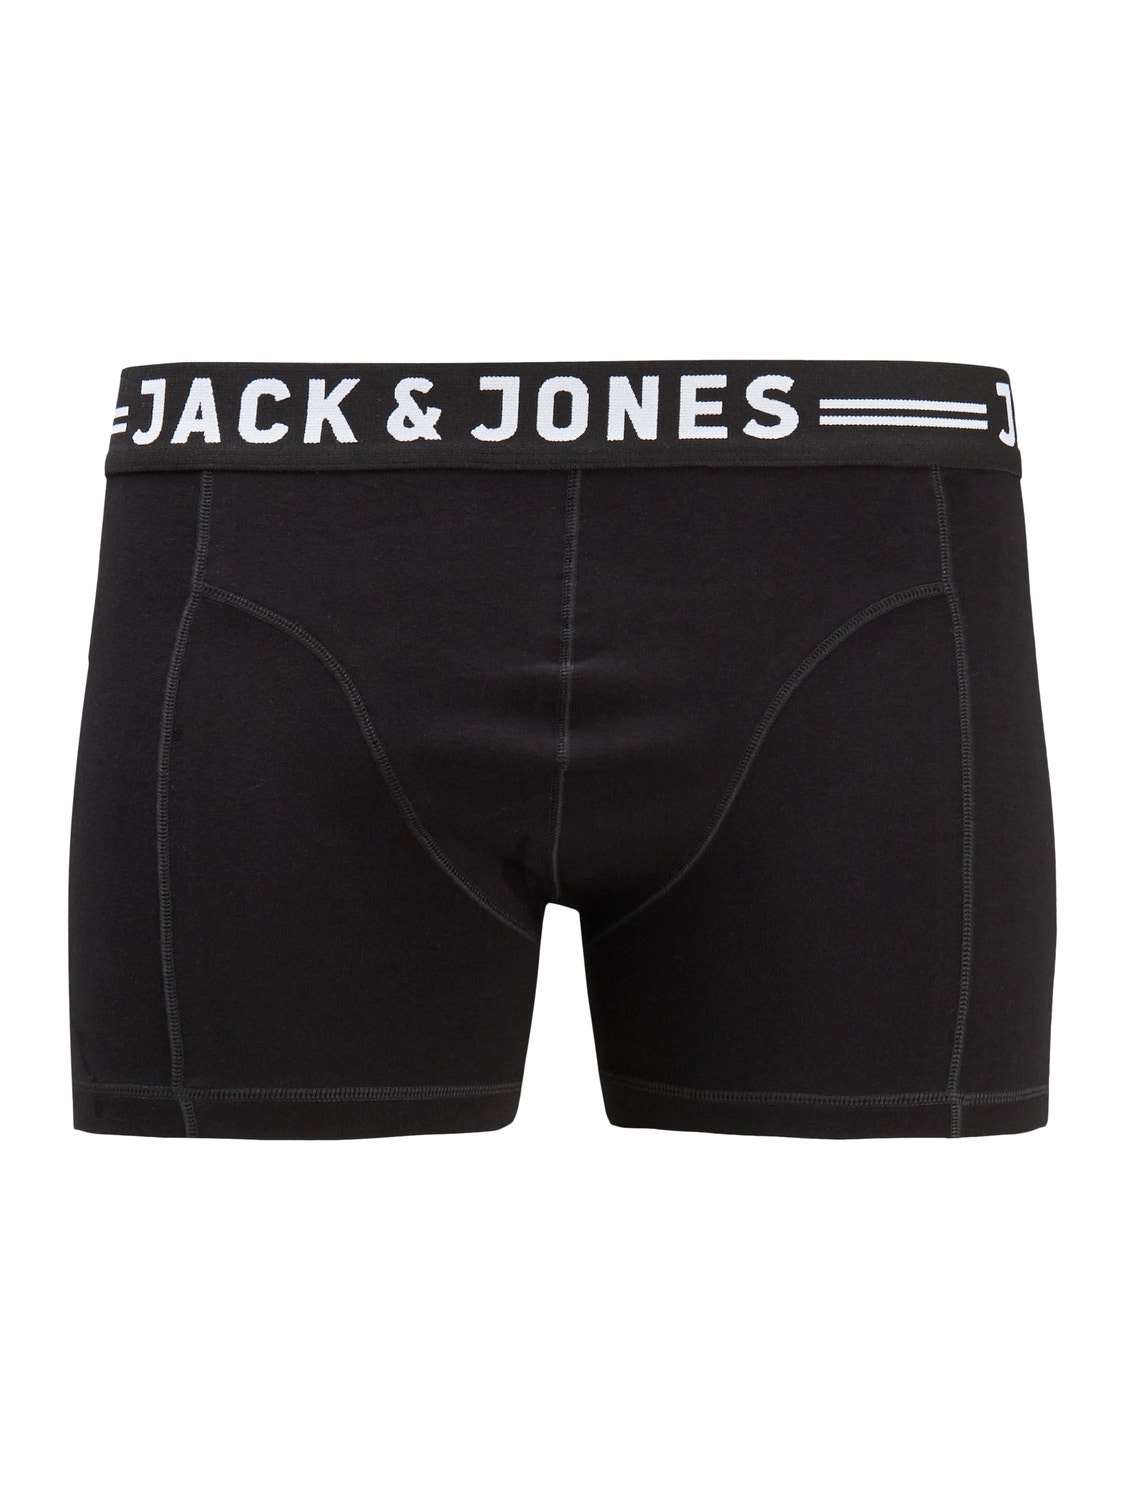 Jack & Jones Plus Size Paquete de 3 Boxers -Black - 12147591